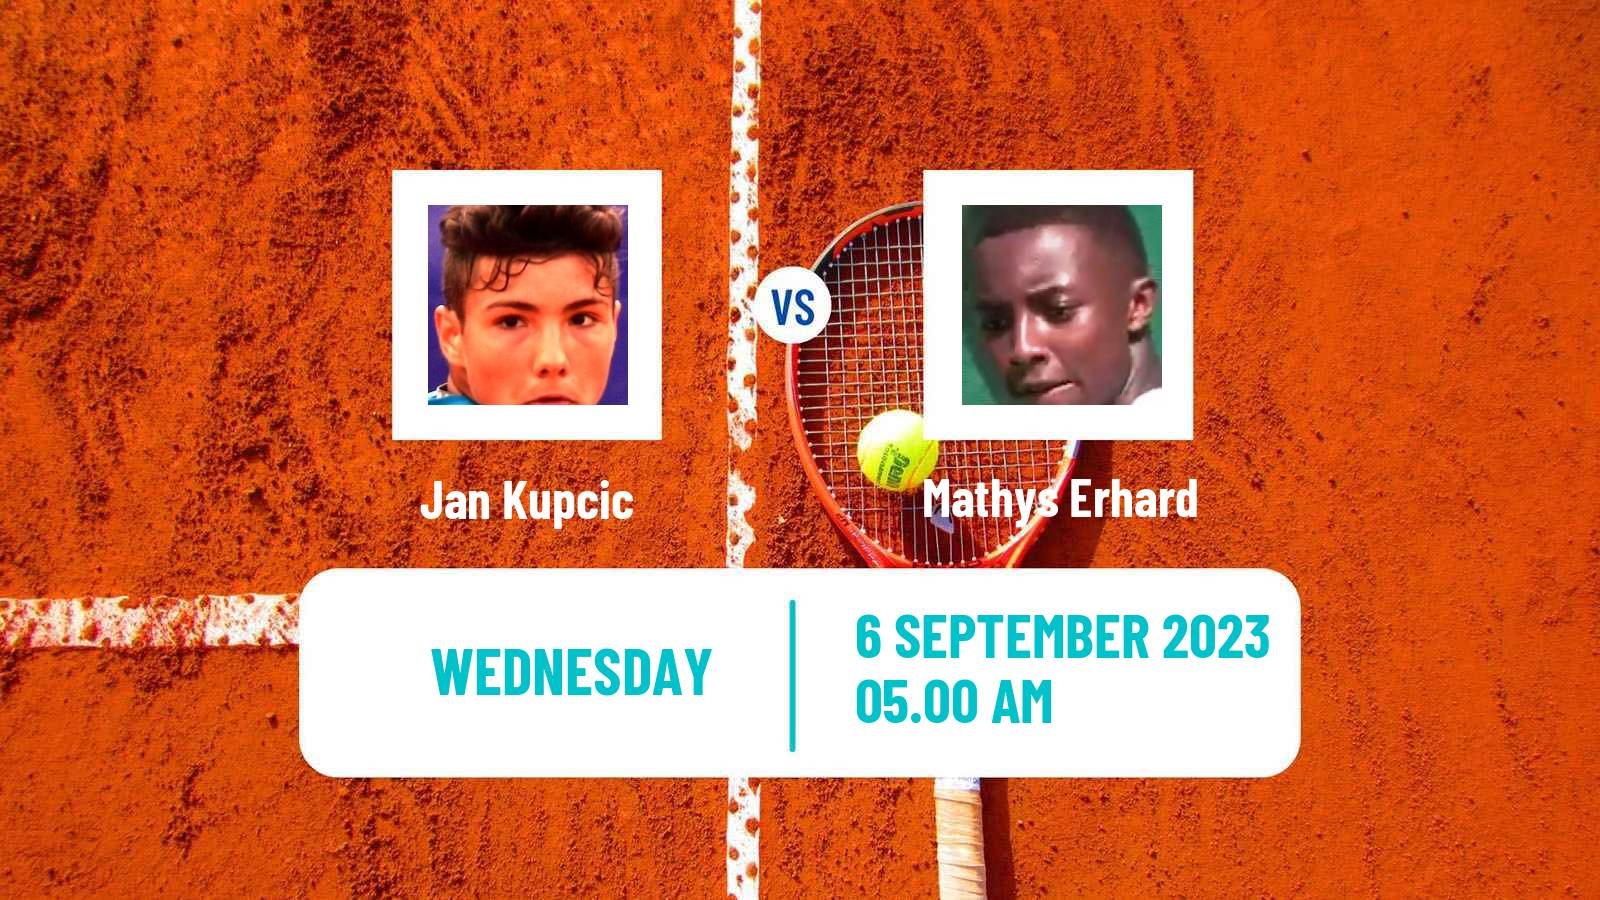 Tennis ITF M25 MarIBOr 3 Men 2023 Jan Kupcic - Mathys Erhard